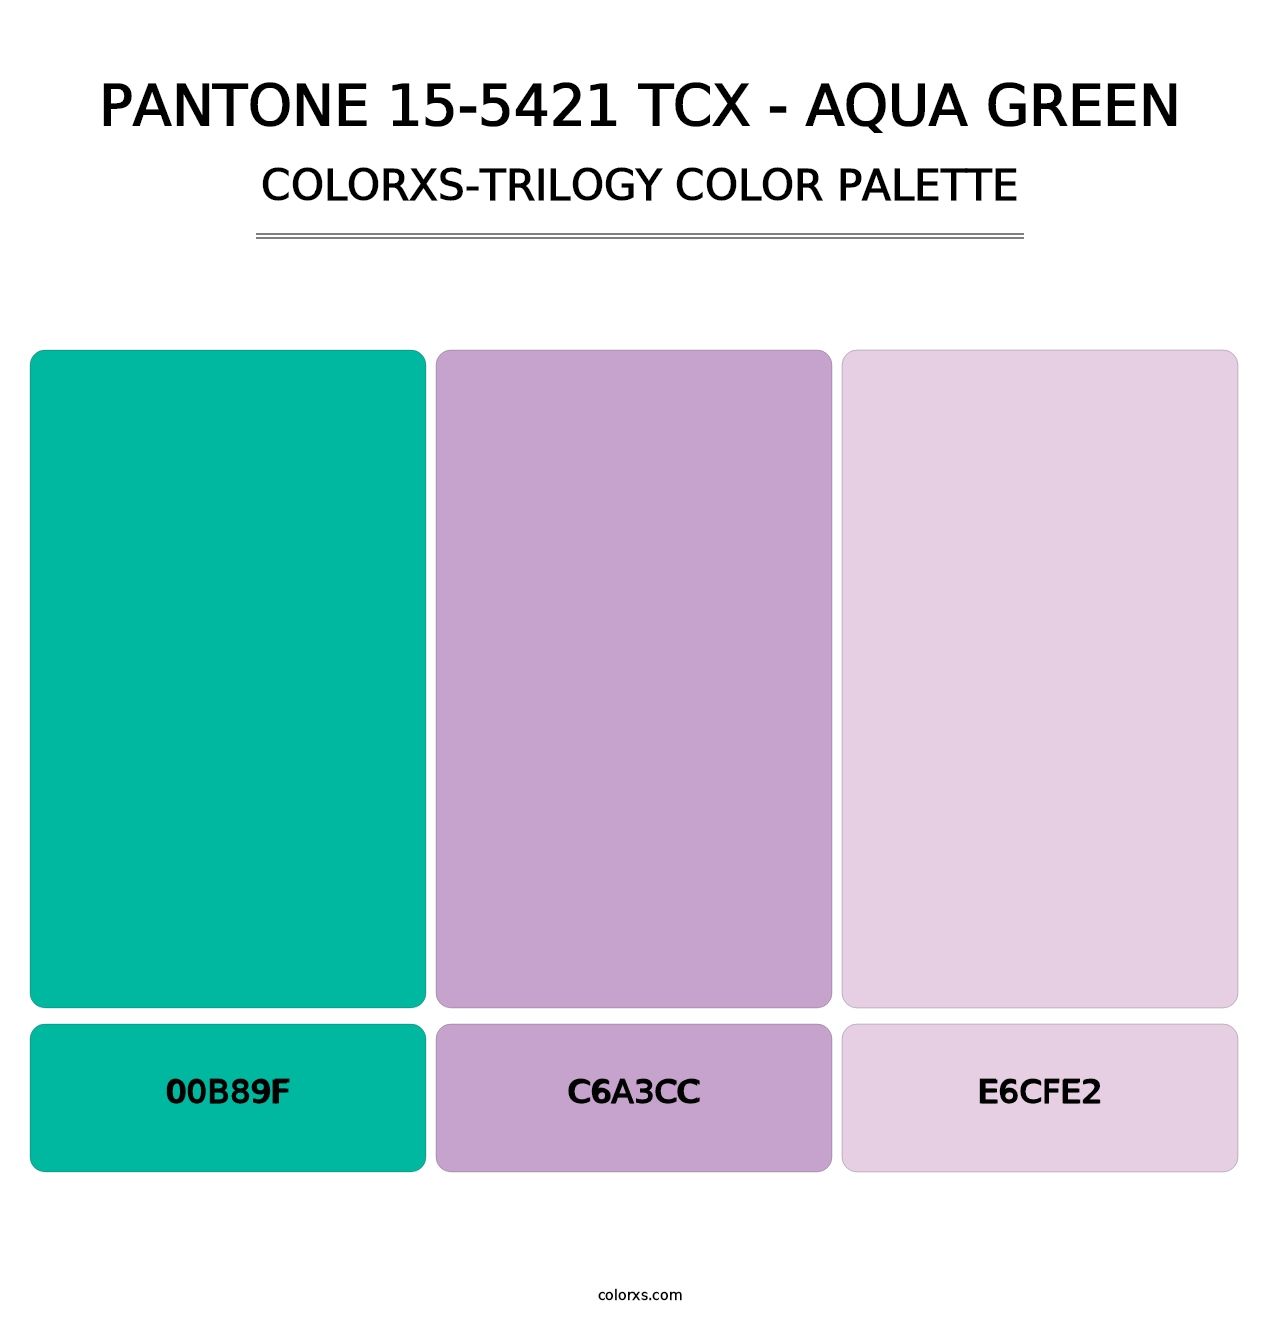 PANTONE 15-5421 TCX - Aqua Green - Colorxs Trilogy Palette